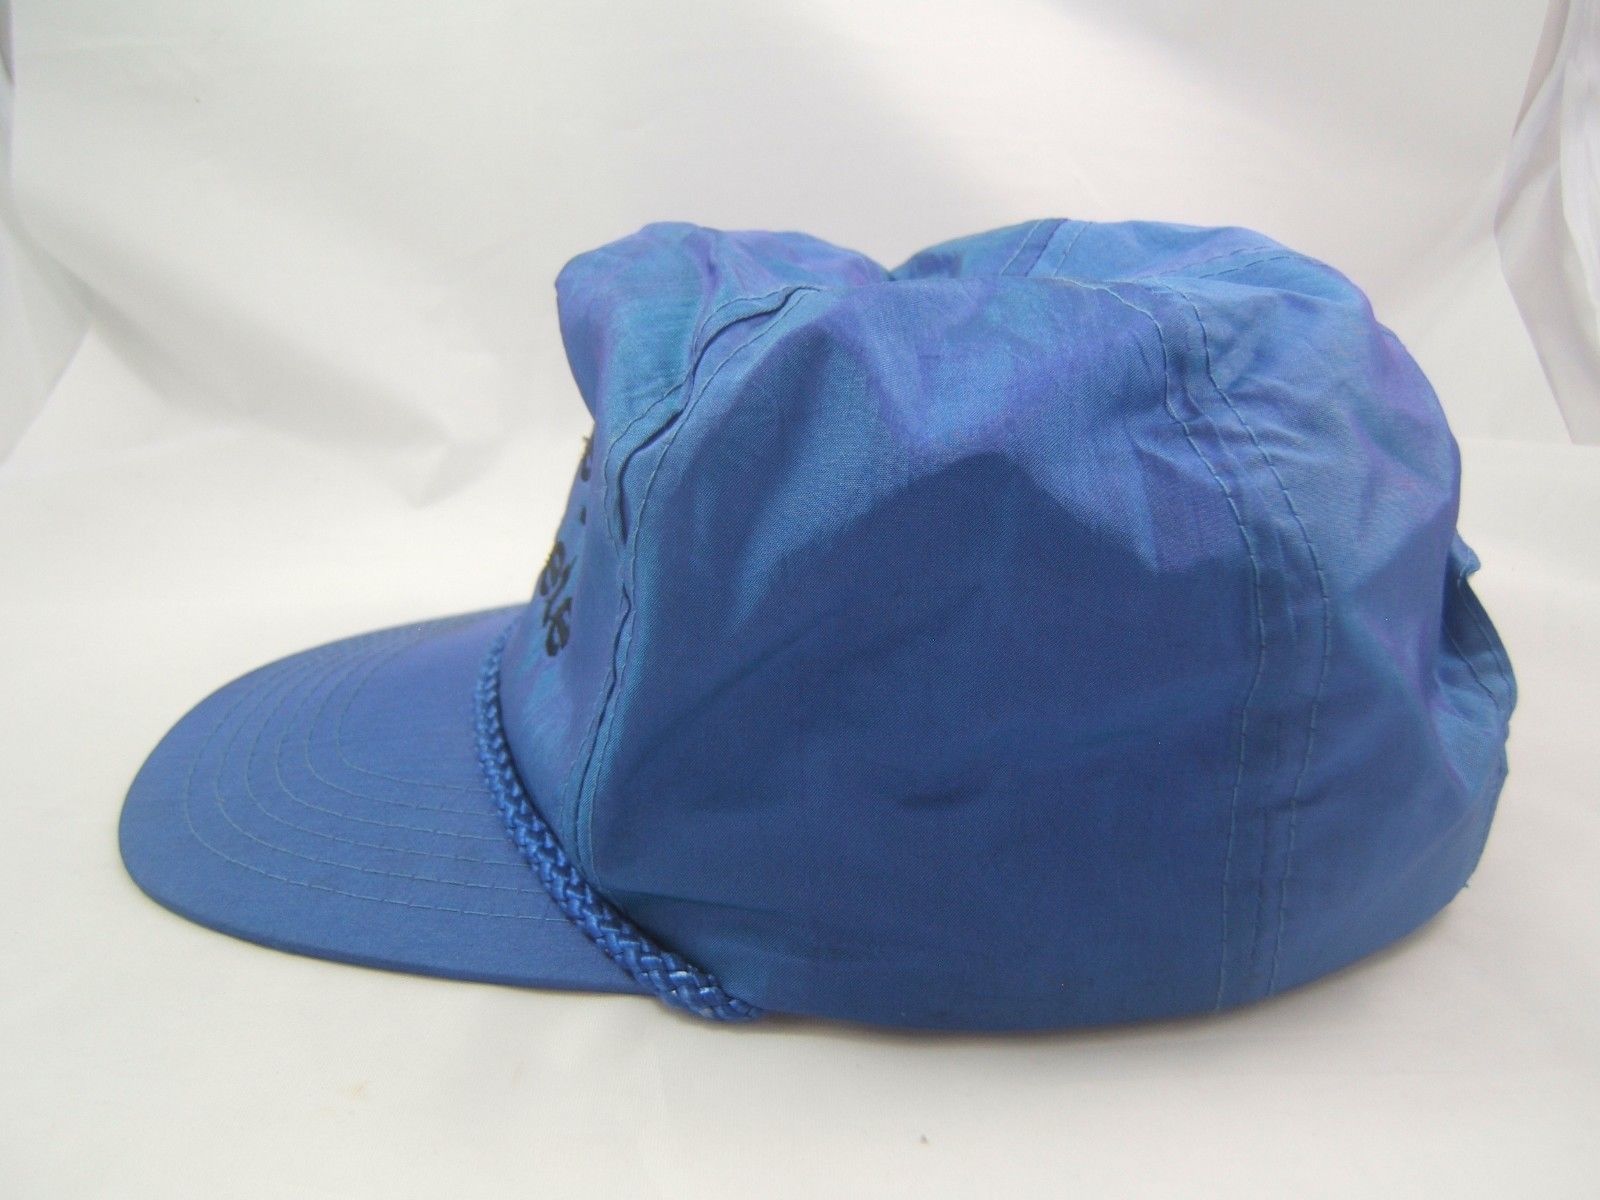 Surrey Concrete Hat Vintage Blue Snapback Baseball Cap - Men's Accessories